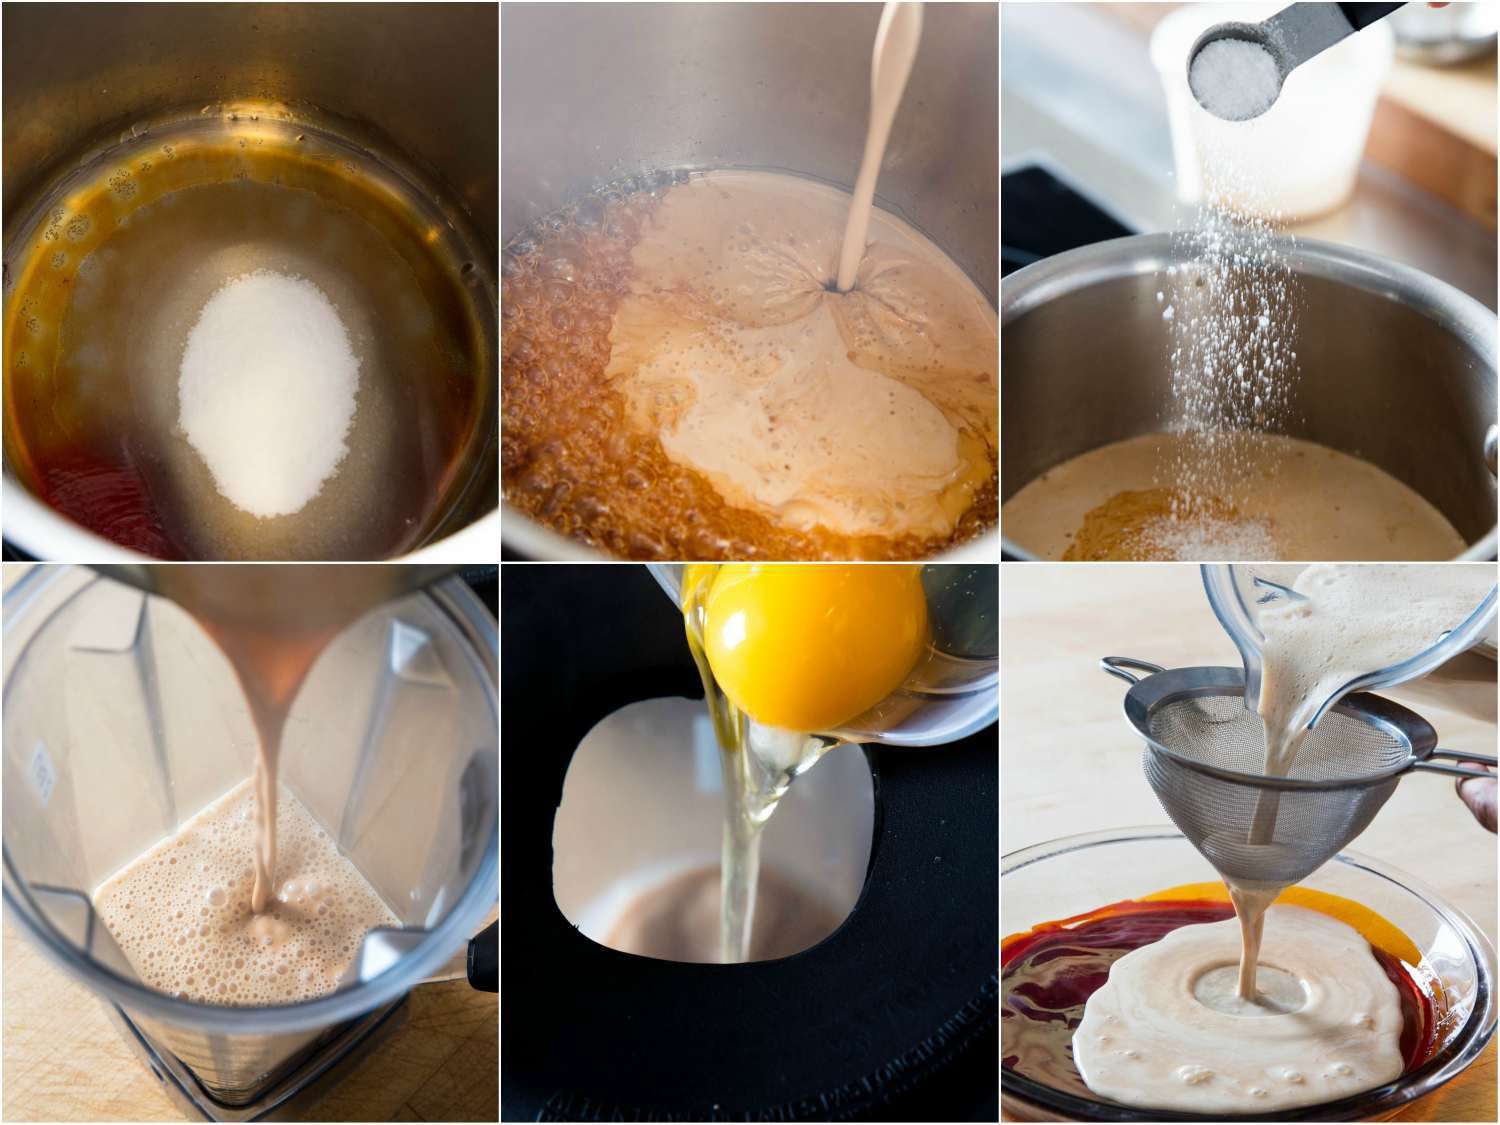 拼贴:在同一个锅里把糖做成焦糖糖浆，在锅里加入奶油和盐。下一步是把焦糖、奶油和牛奶混合物倒进搅拌机里，使鸡蛋变热。把搅拌器开到小火，在搅拌器运转的同时，加入整个鸡蛋、蛋黄、盐和香草精。gydF4y2Ba